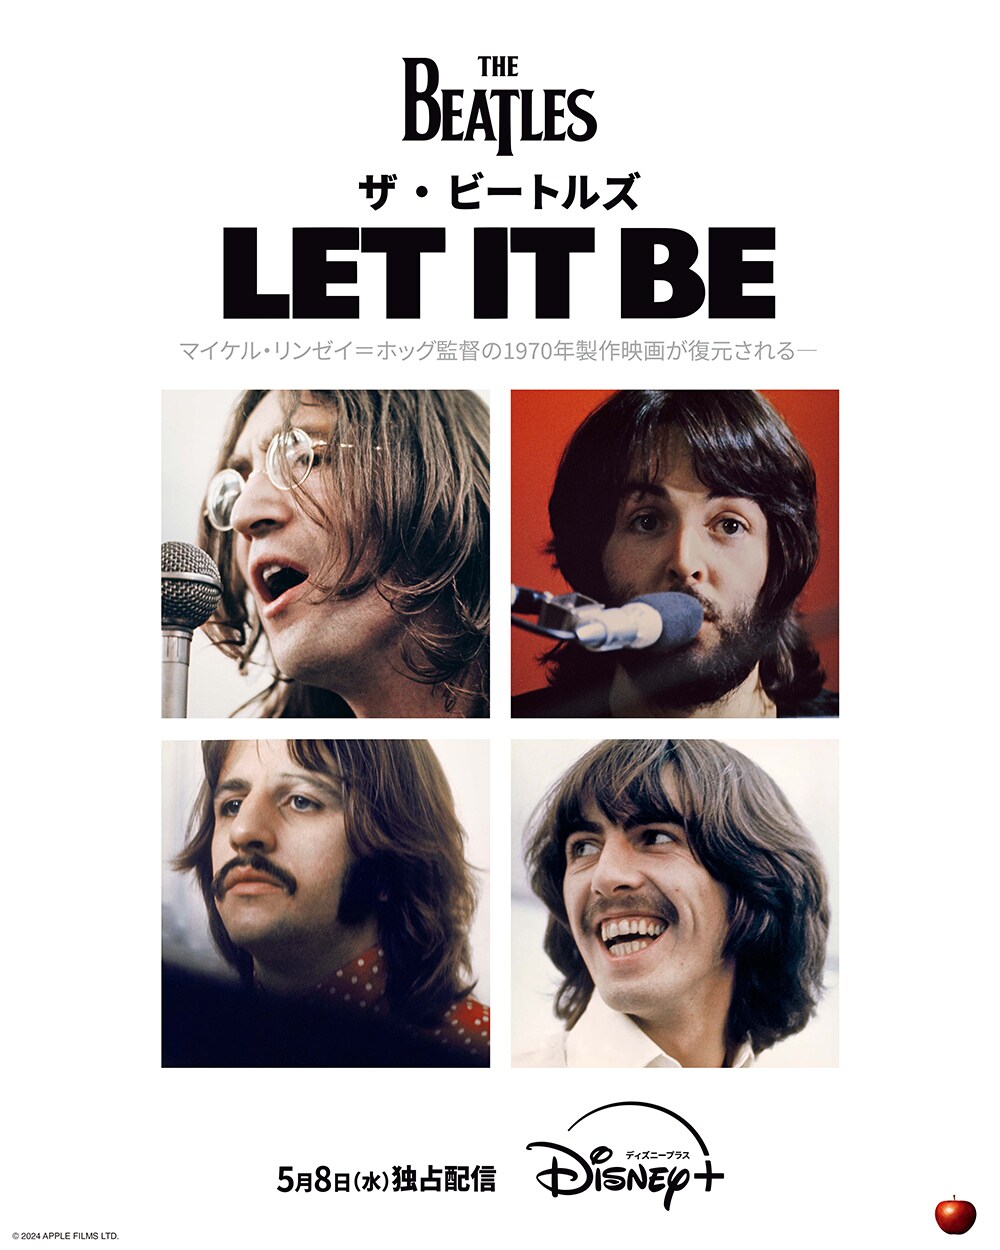 ザ・ビートルズのドキュメンタリー映画『ザ・ビートルズ: Let It Be ...